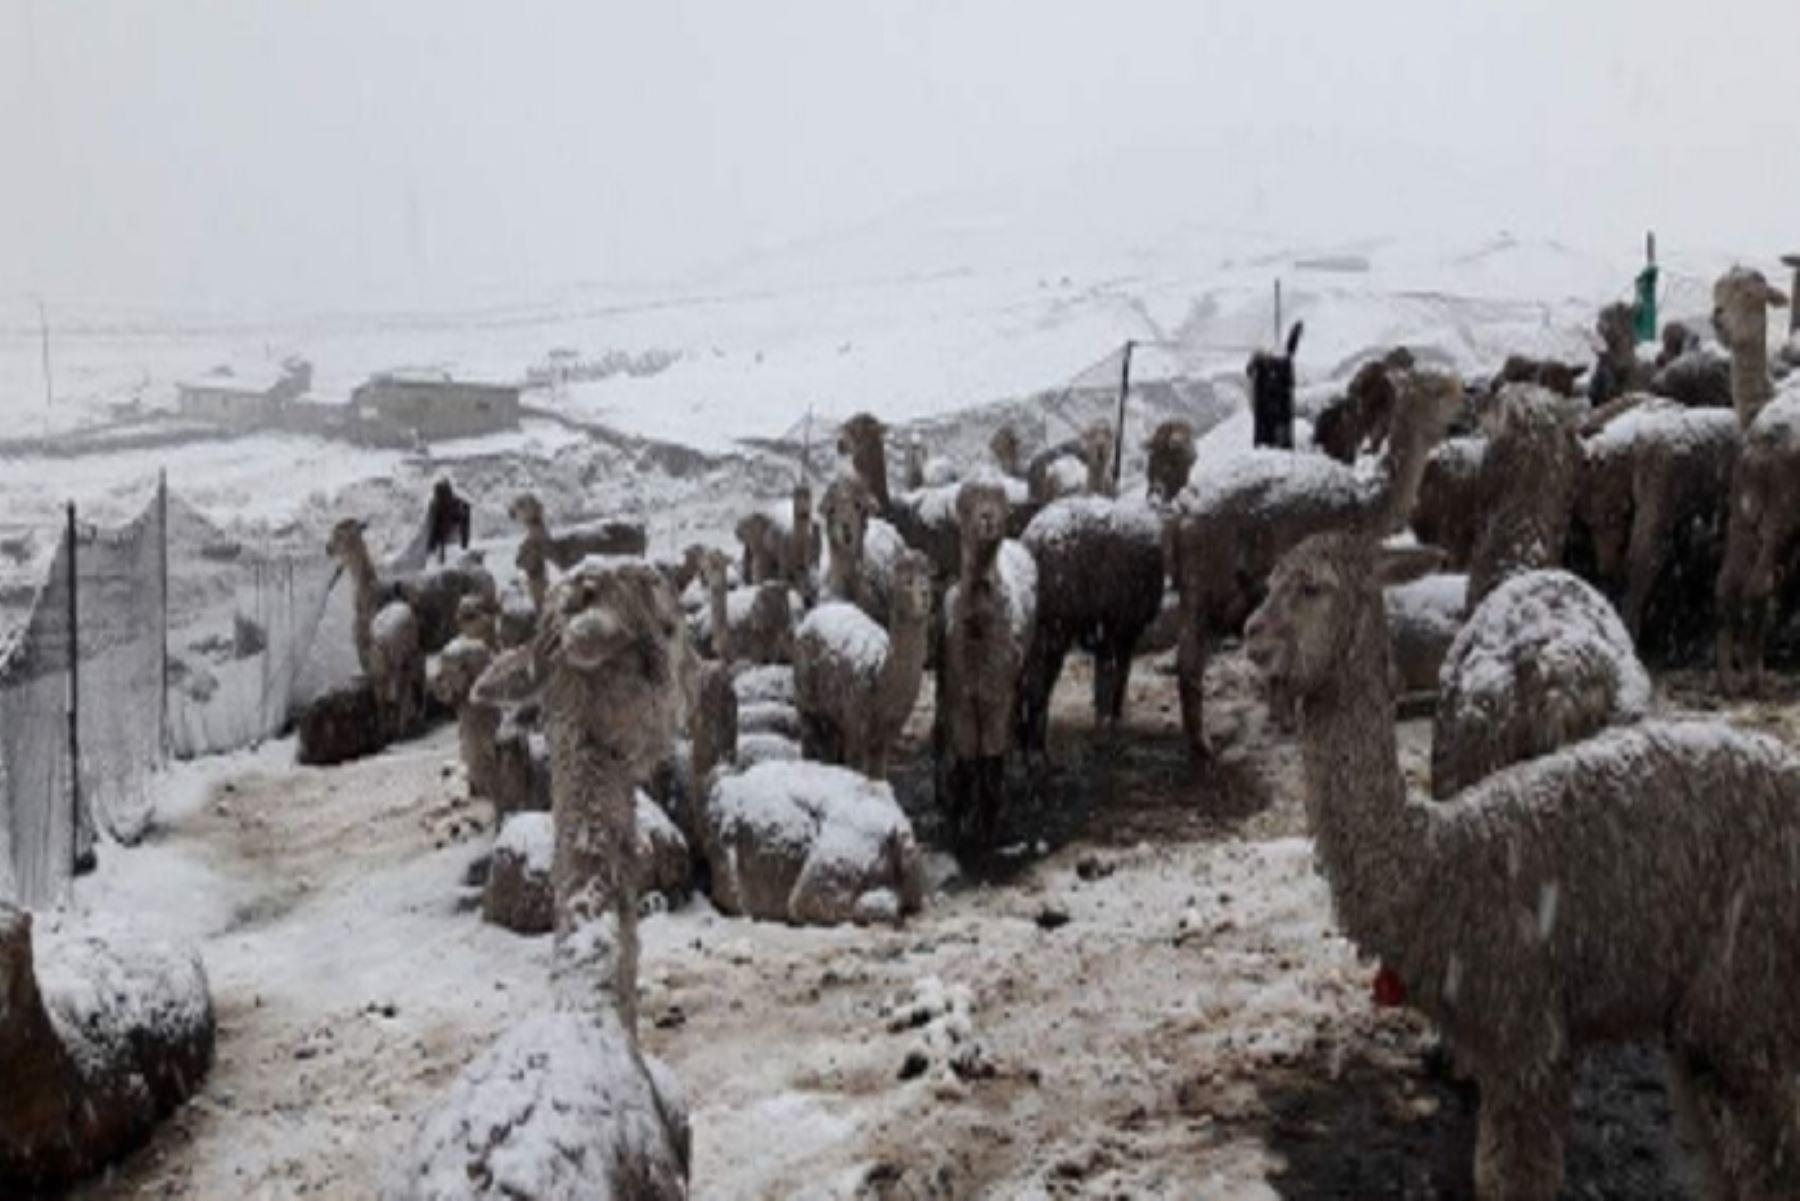 En el Tambo de Llullucha, a 4132 metros de altura, en la localidad lda dñocPukaccasa del distrito y provincia de Ocongate, en la región Cusco, el acumulado de nieve llegó hasta los 35 centímetros de altura.